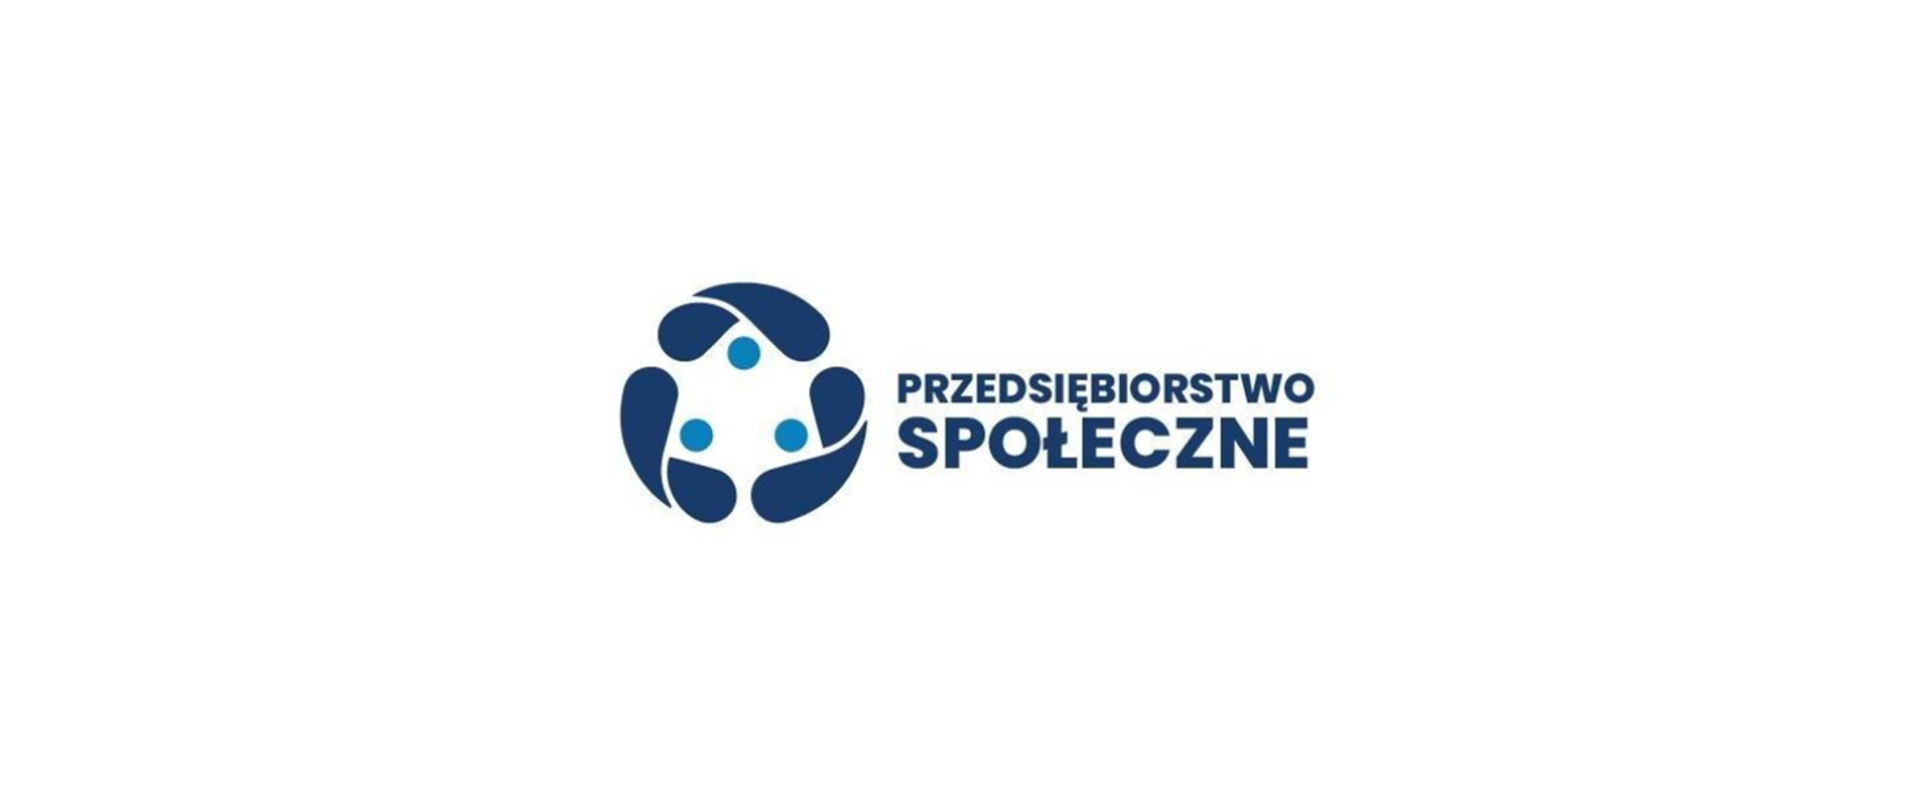 PLN 22 million for social enterprises